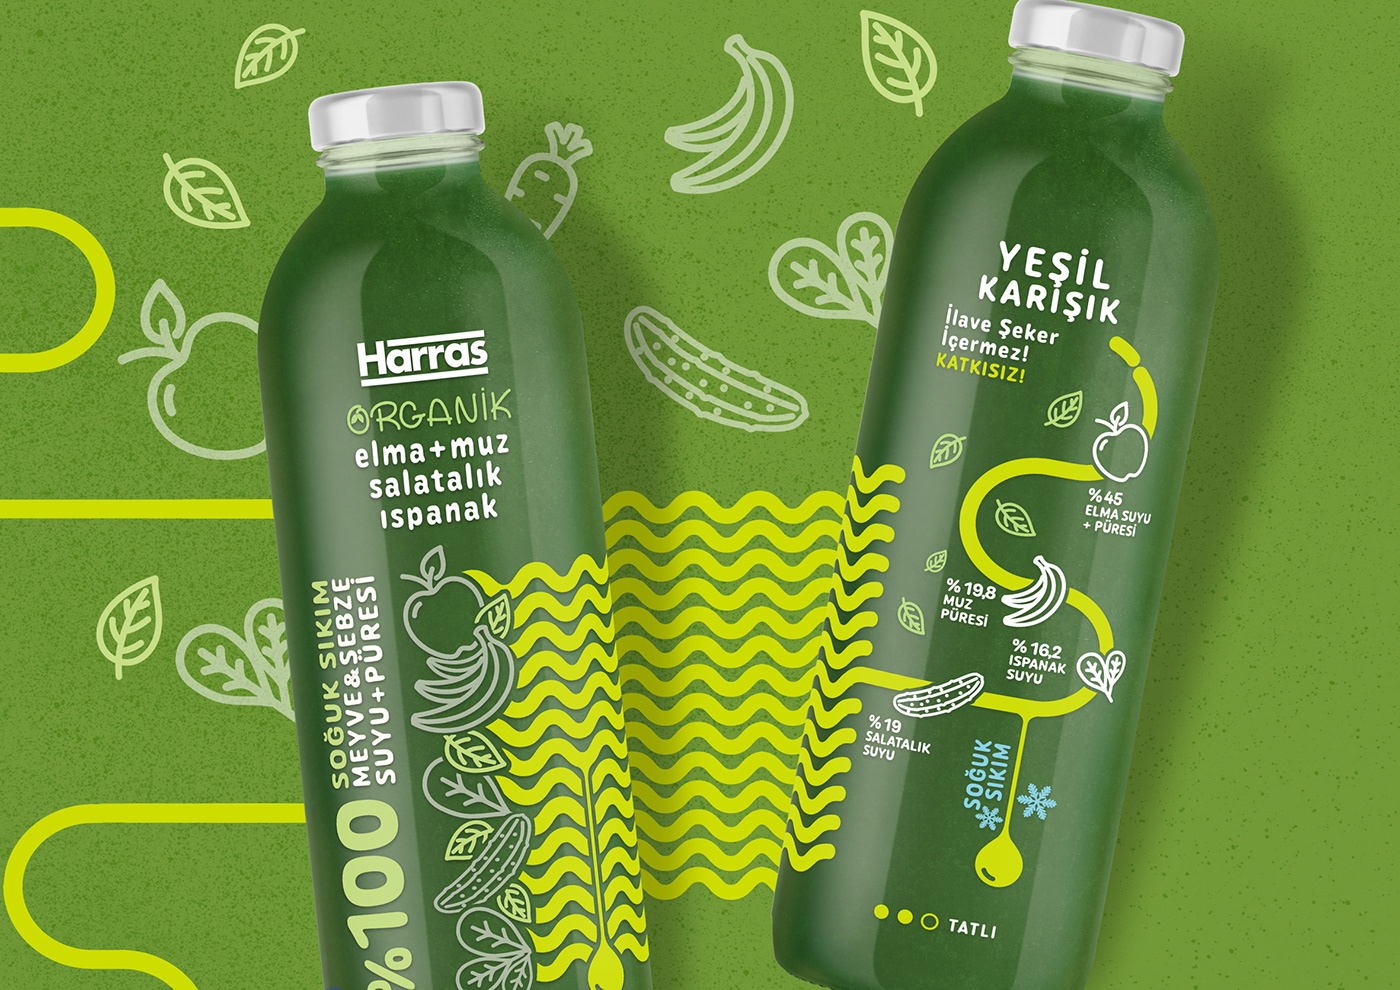 bottle Packaging soft drink organic smoothie healthy juice keyiflifikirler packaging design